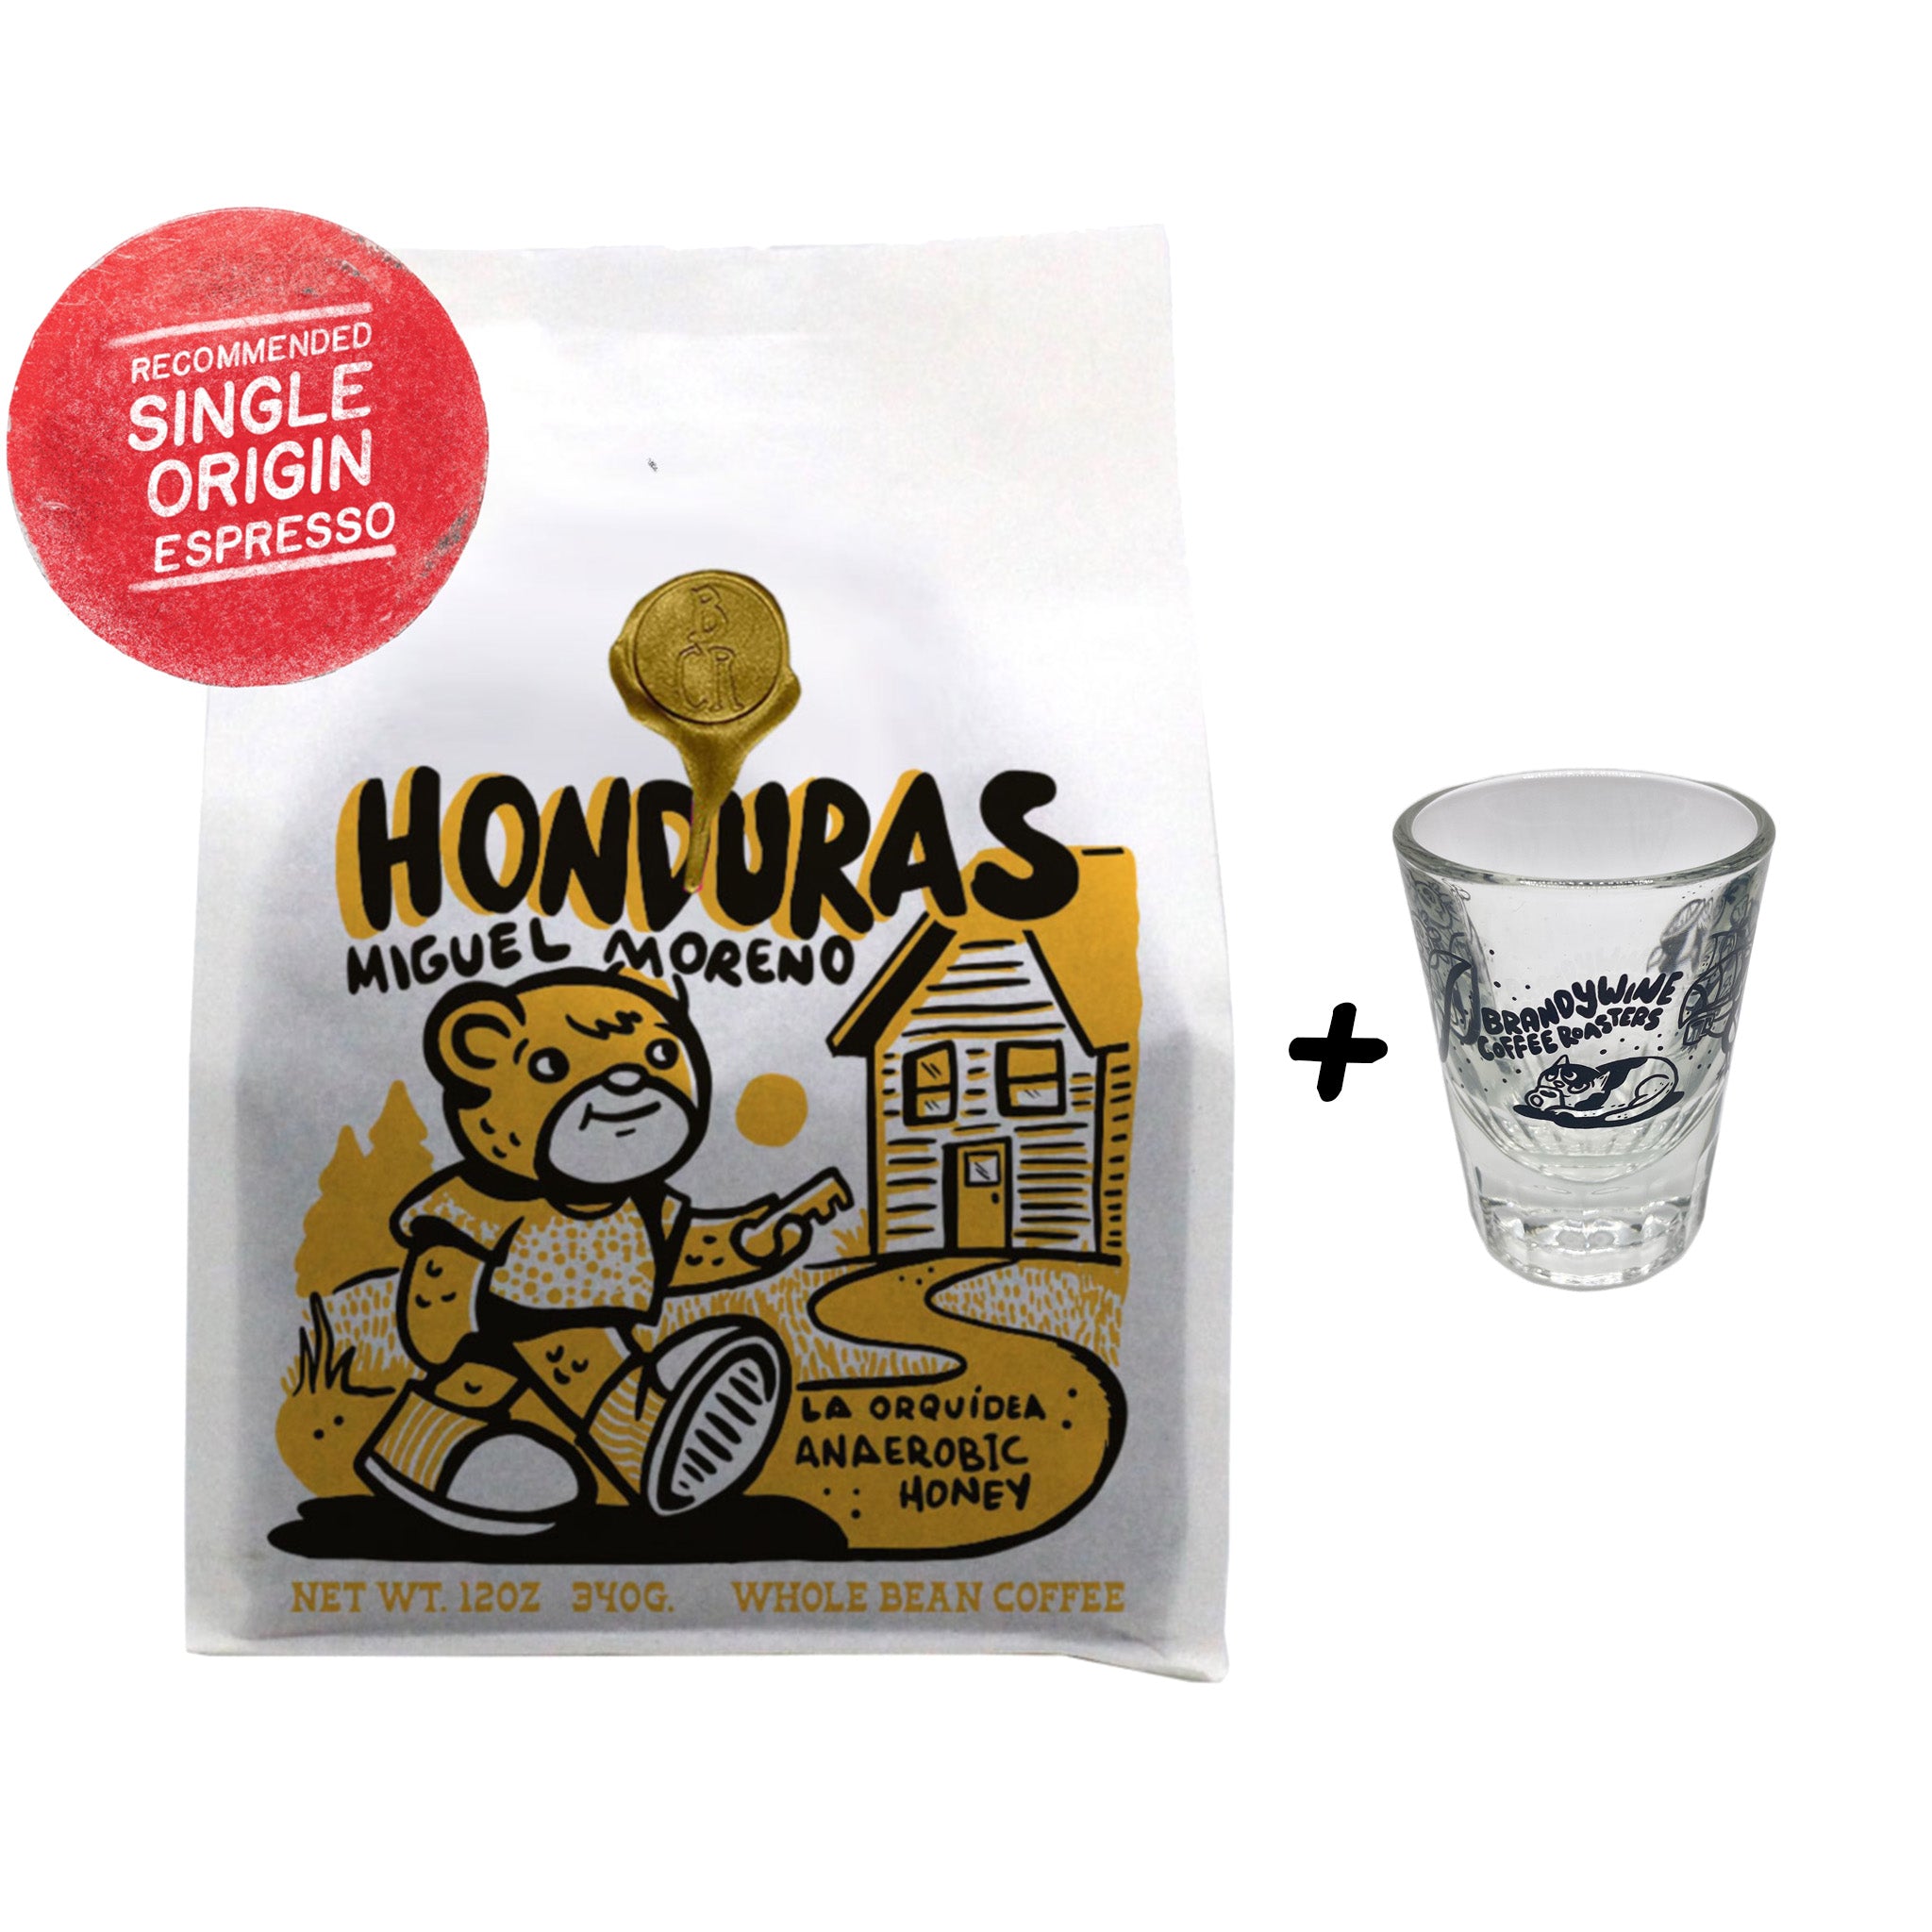 Honduras - Miguel Moreno - La Orquidea - Honey